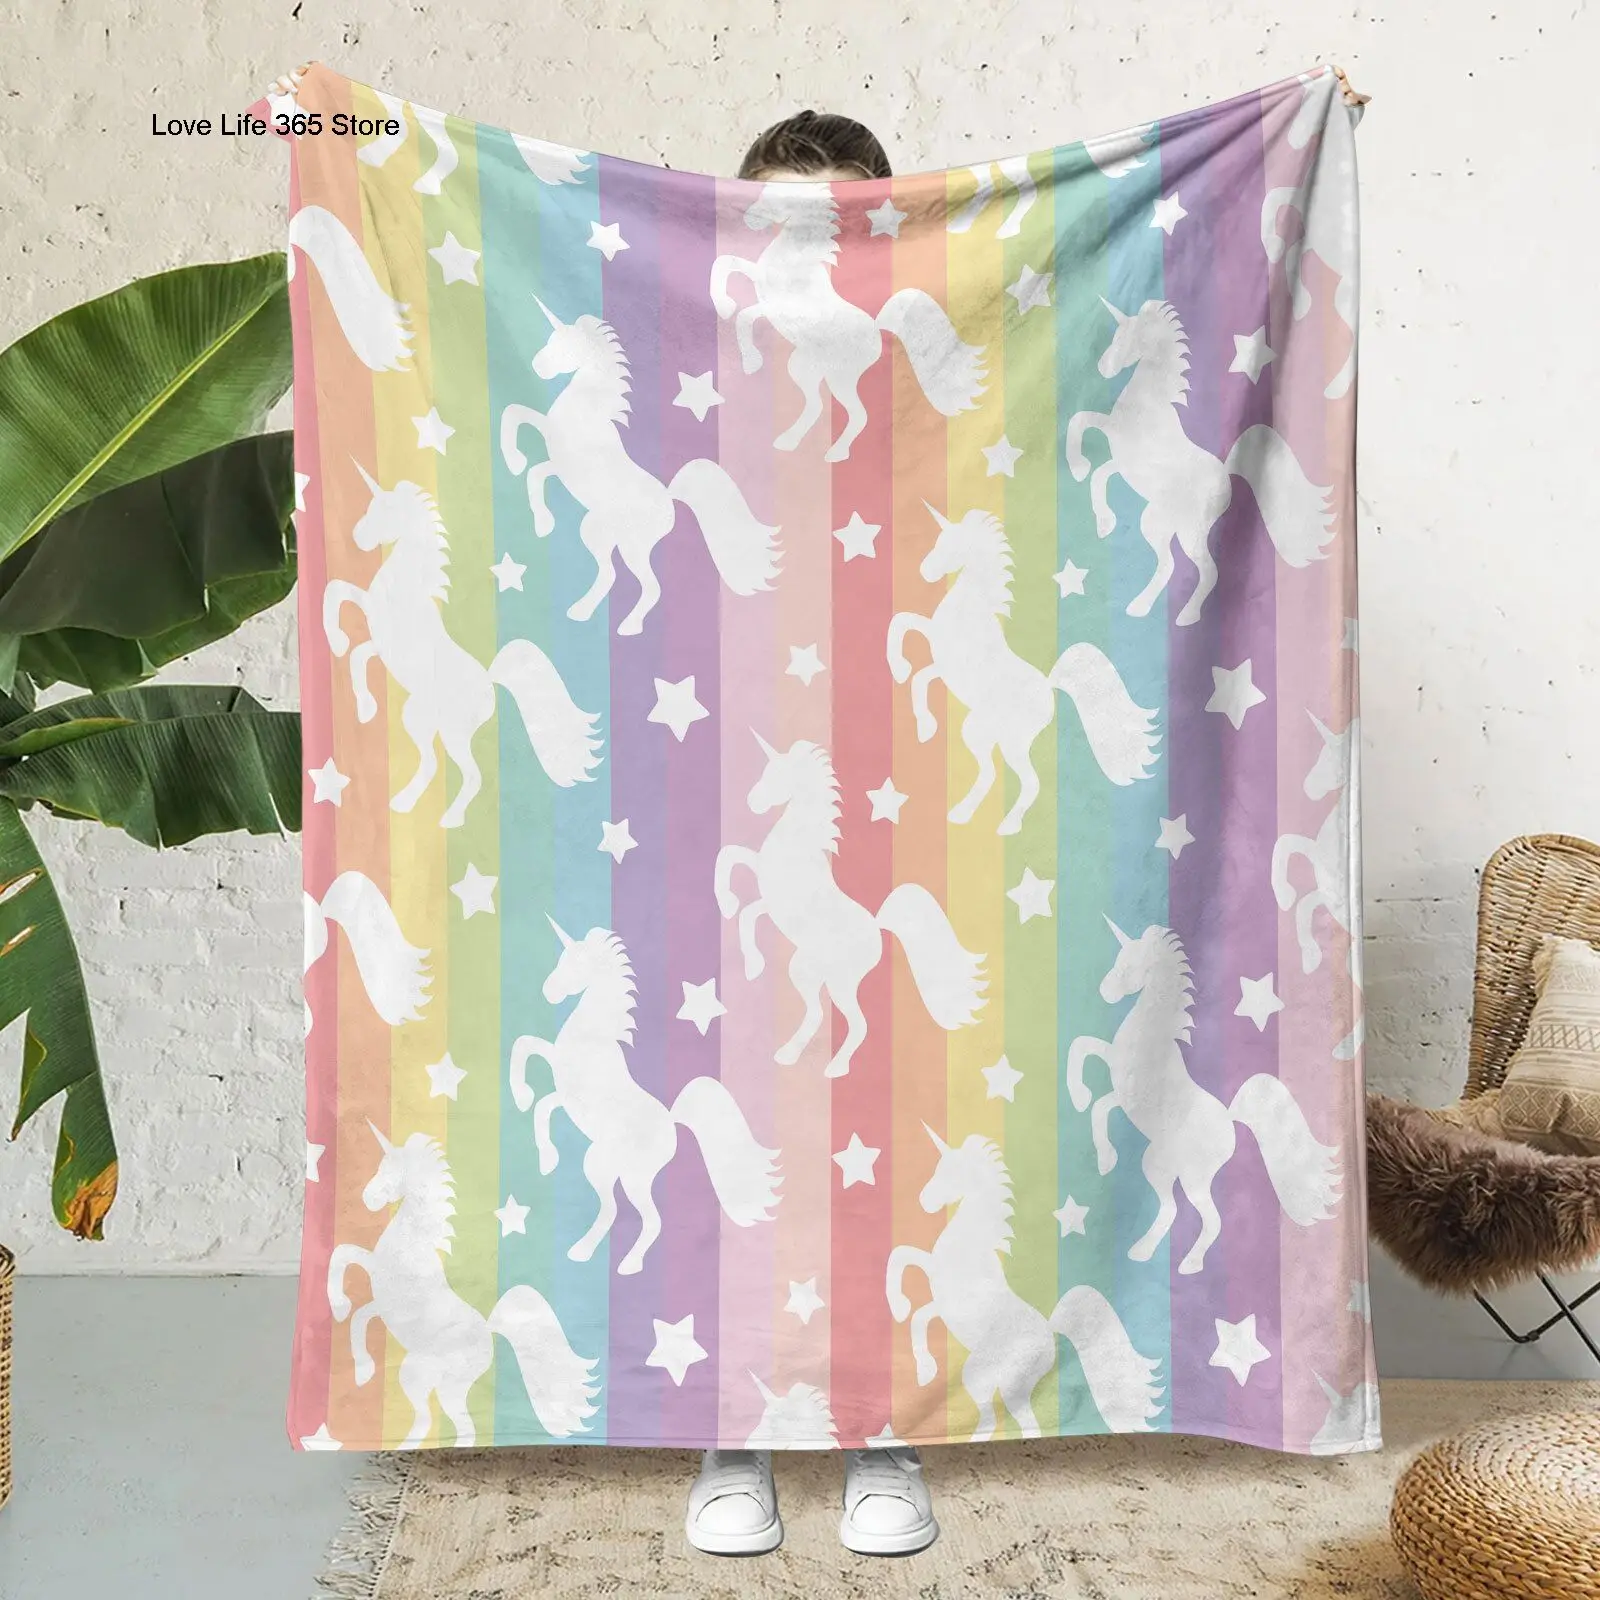 

Фланелевое Одеяло с 3D рисунком радуги и единорога, Мультяшные одеяла, подарок для детей и взрослых, домашний декор, гостиная, спальня, диван